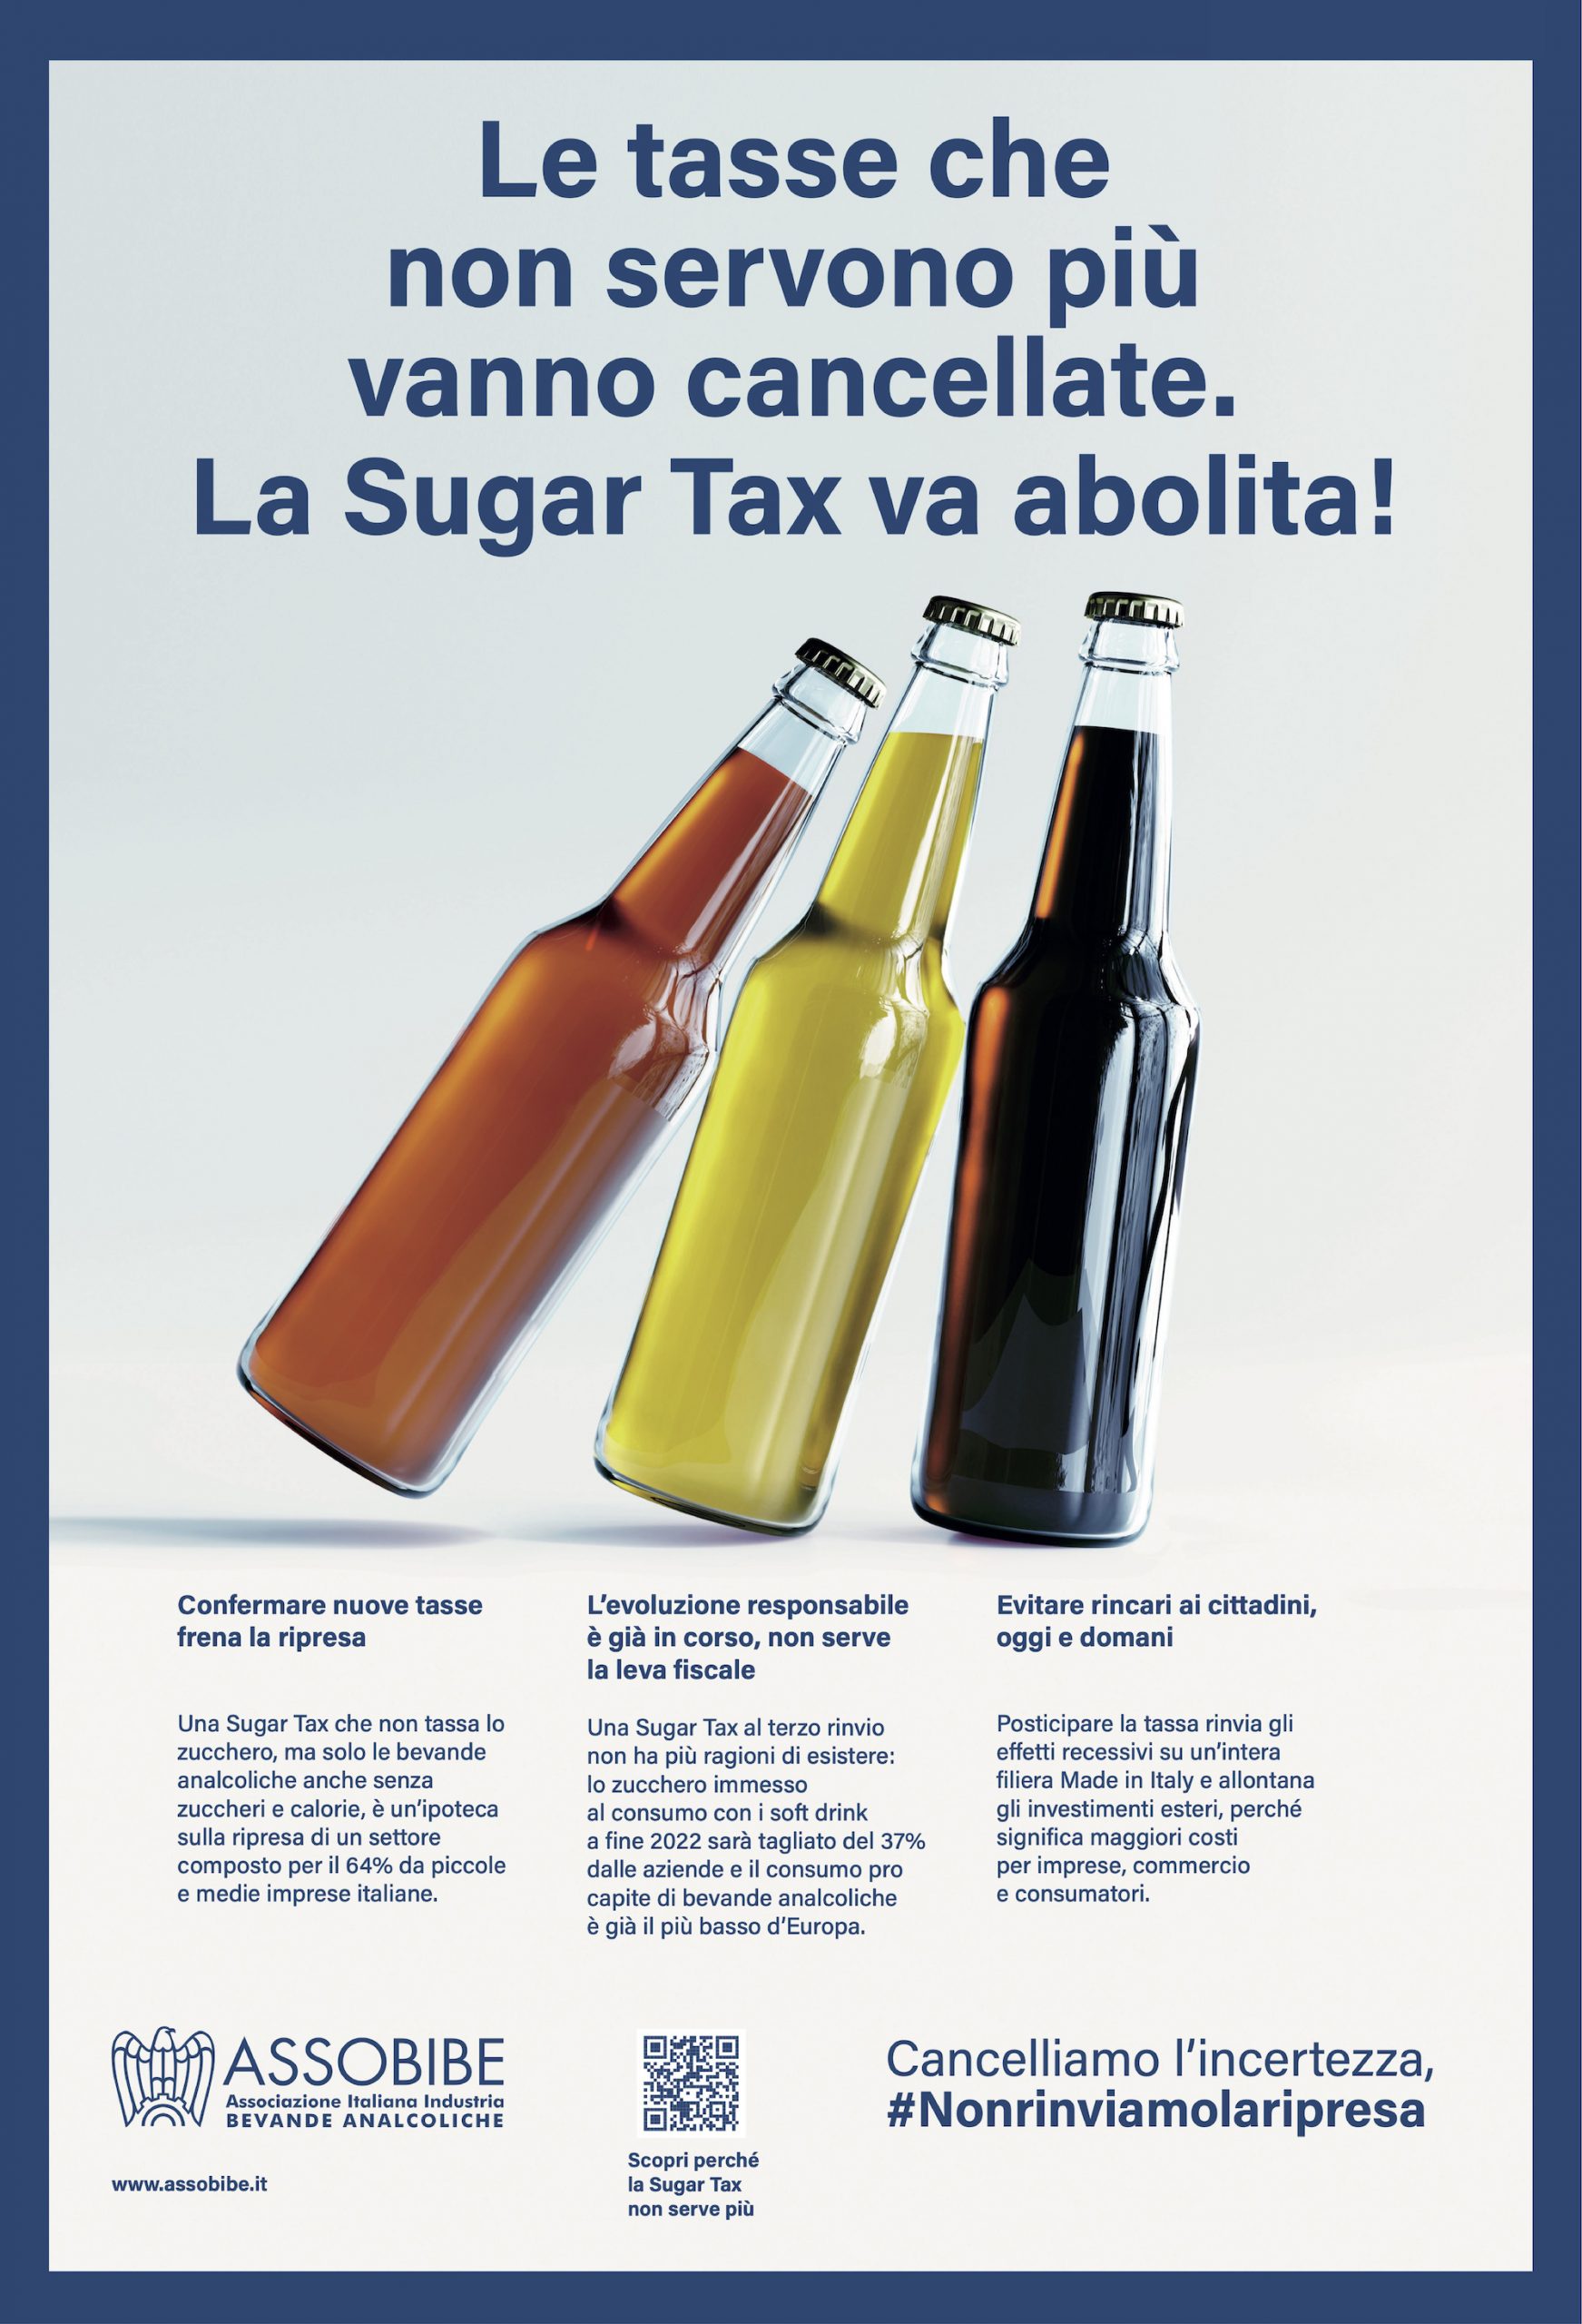 Abolizione della sugar tax